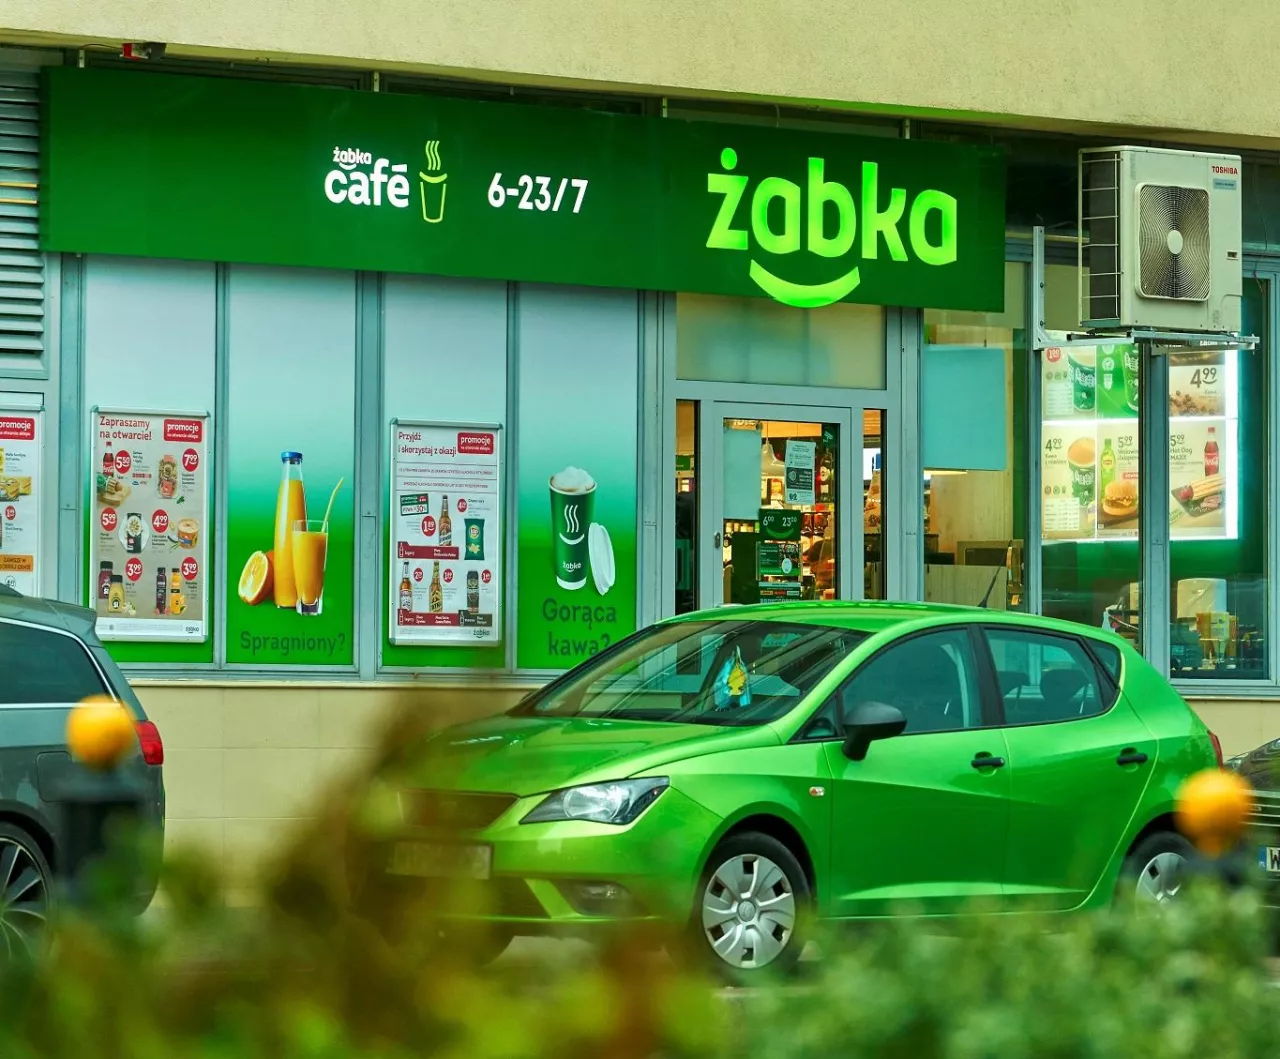 Do końca roku w Polsce może działać 8000 sklepów pod logo Żabka (materiały prasowe)